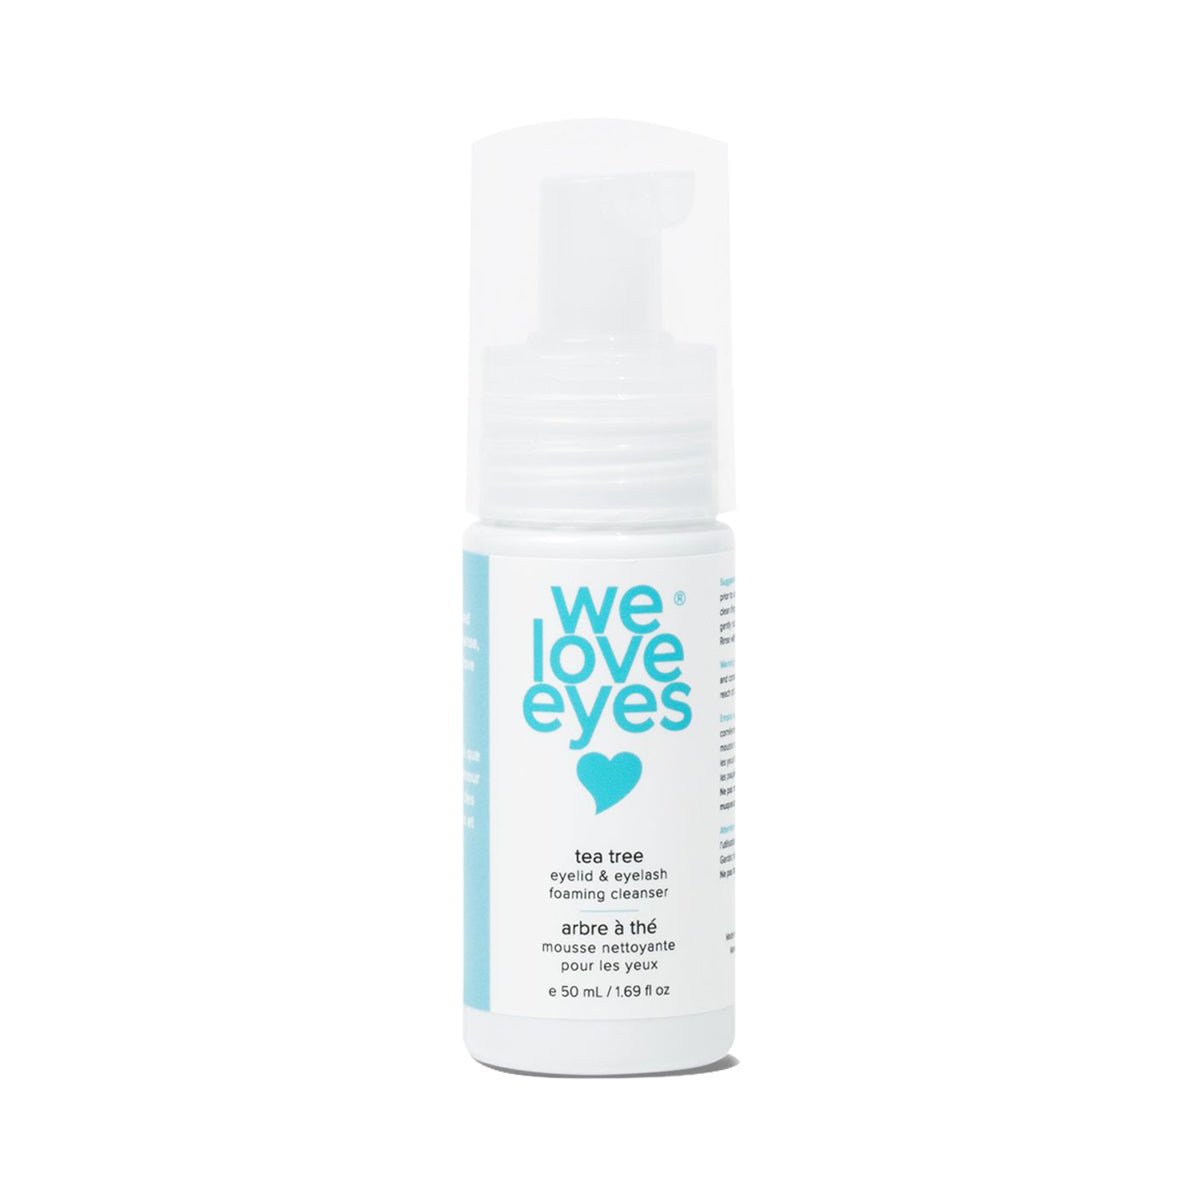 We Love Eyes: Tea Tree Eyelid Foaming Cleanser - Dryeye Rescue